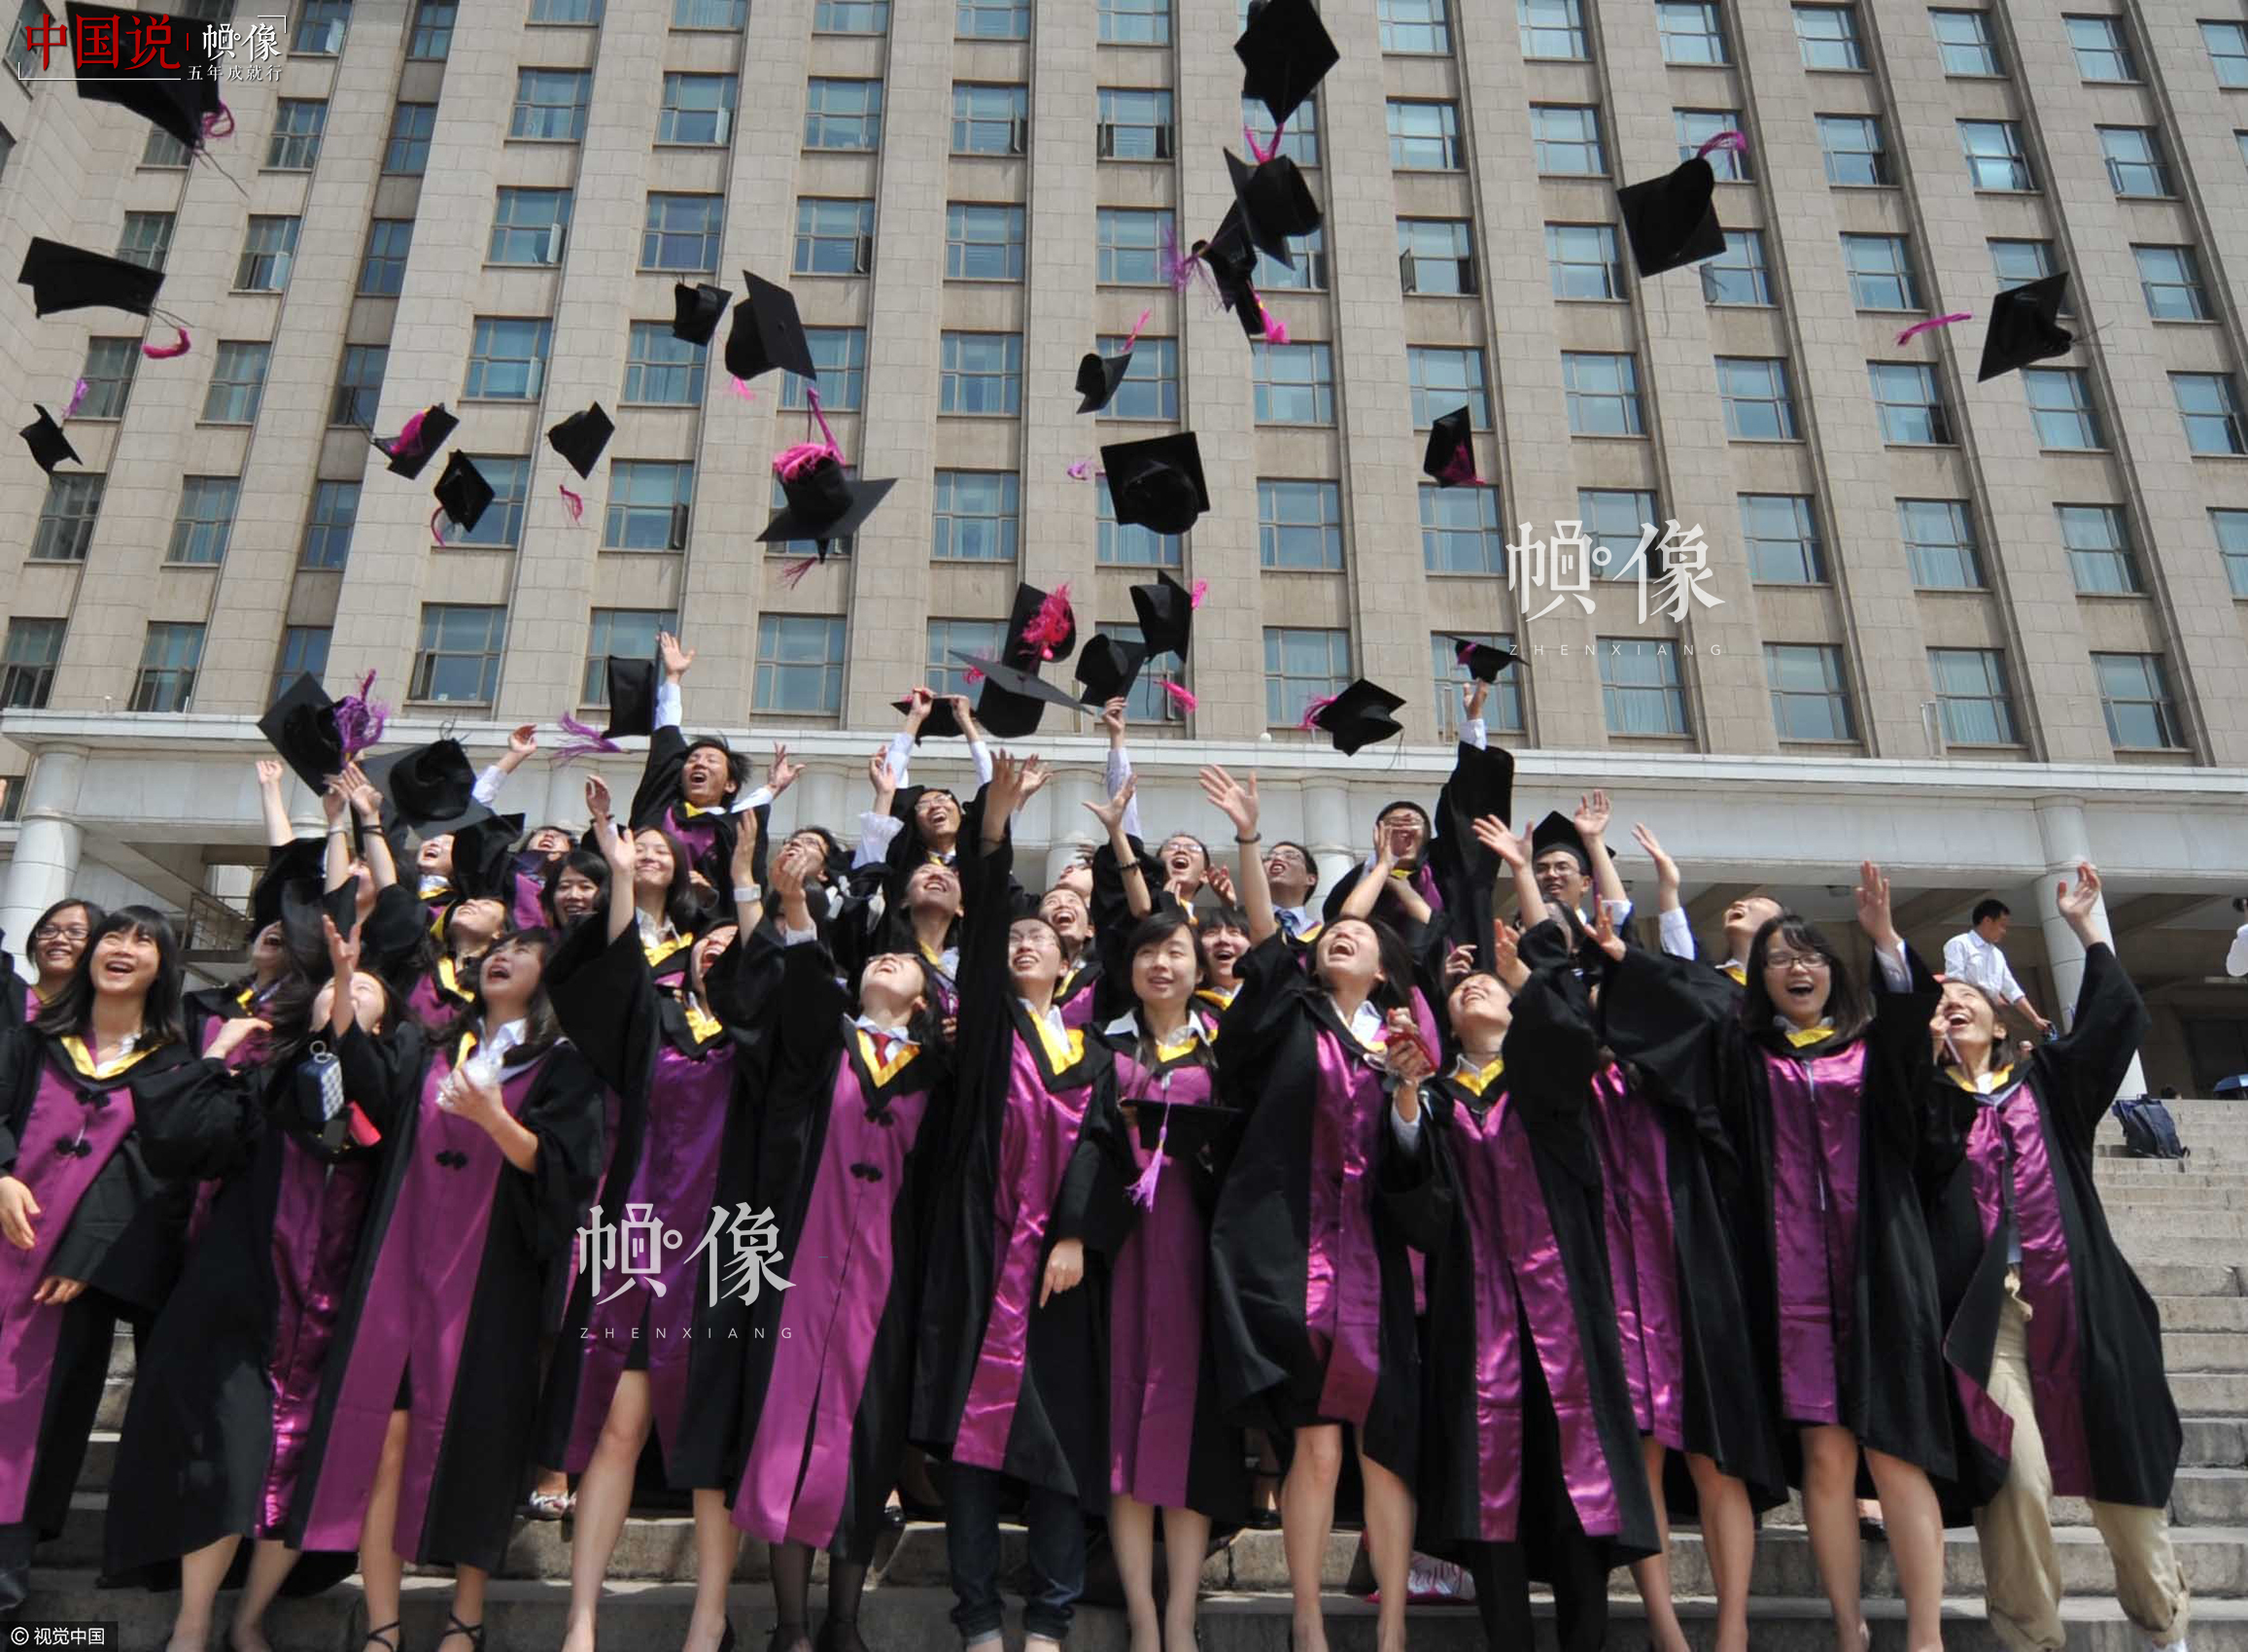 2011年6月27日，清华大学迎来毕业季，不少毕业学生即将离开母校，为留下珍贵的记忆，学生们争相拍摄集体照。视觉中国供图